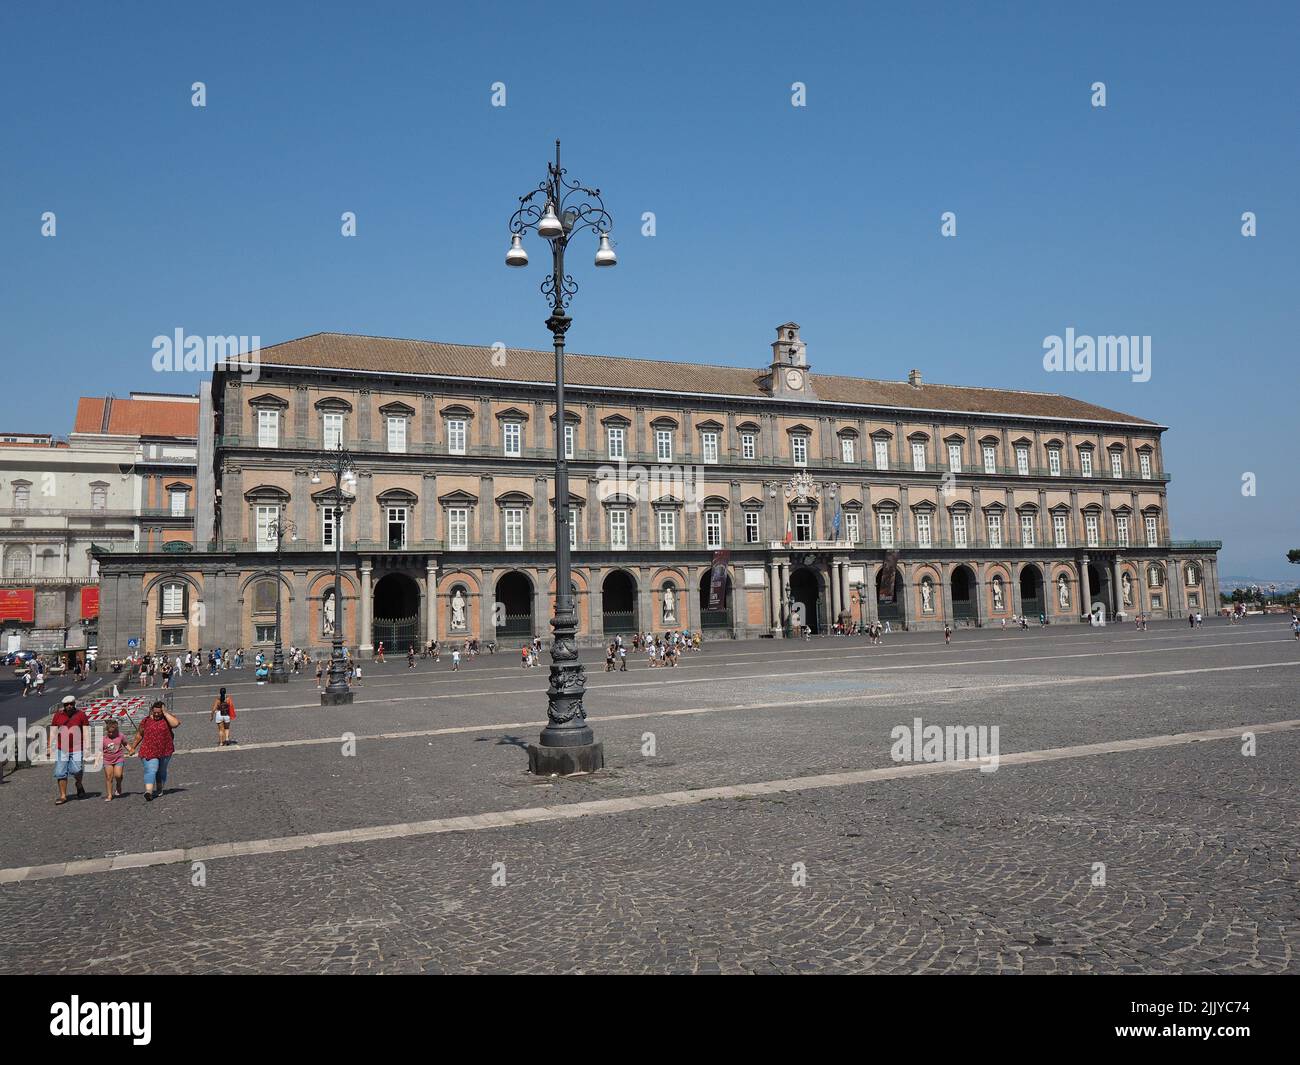 Façade du Palazzo Reale, ou Palais Royal, dans le centre-ville de Naples, Campanie, Italie. La façade est décorée de grandes statues du k Banque D'Images